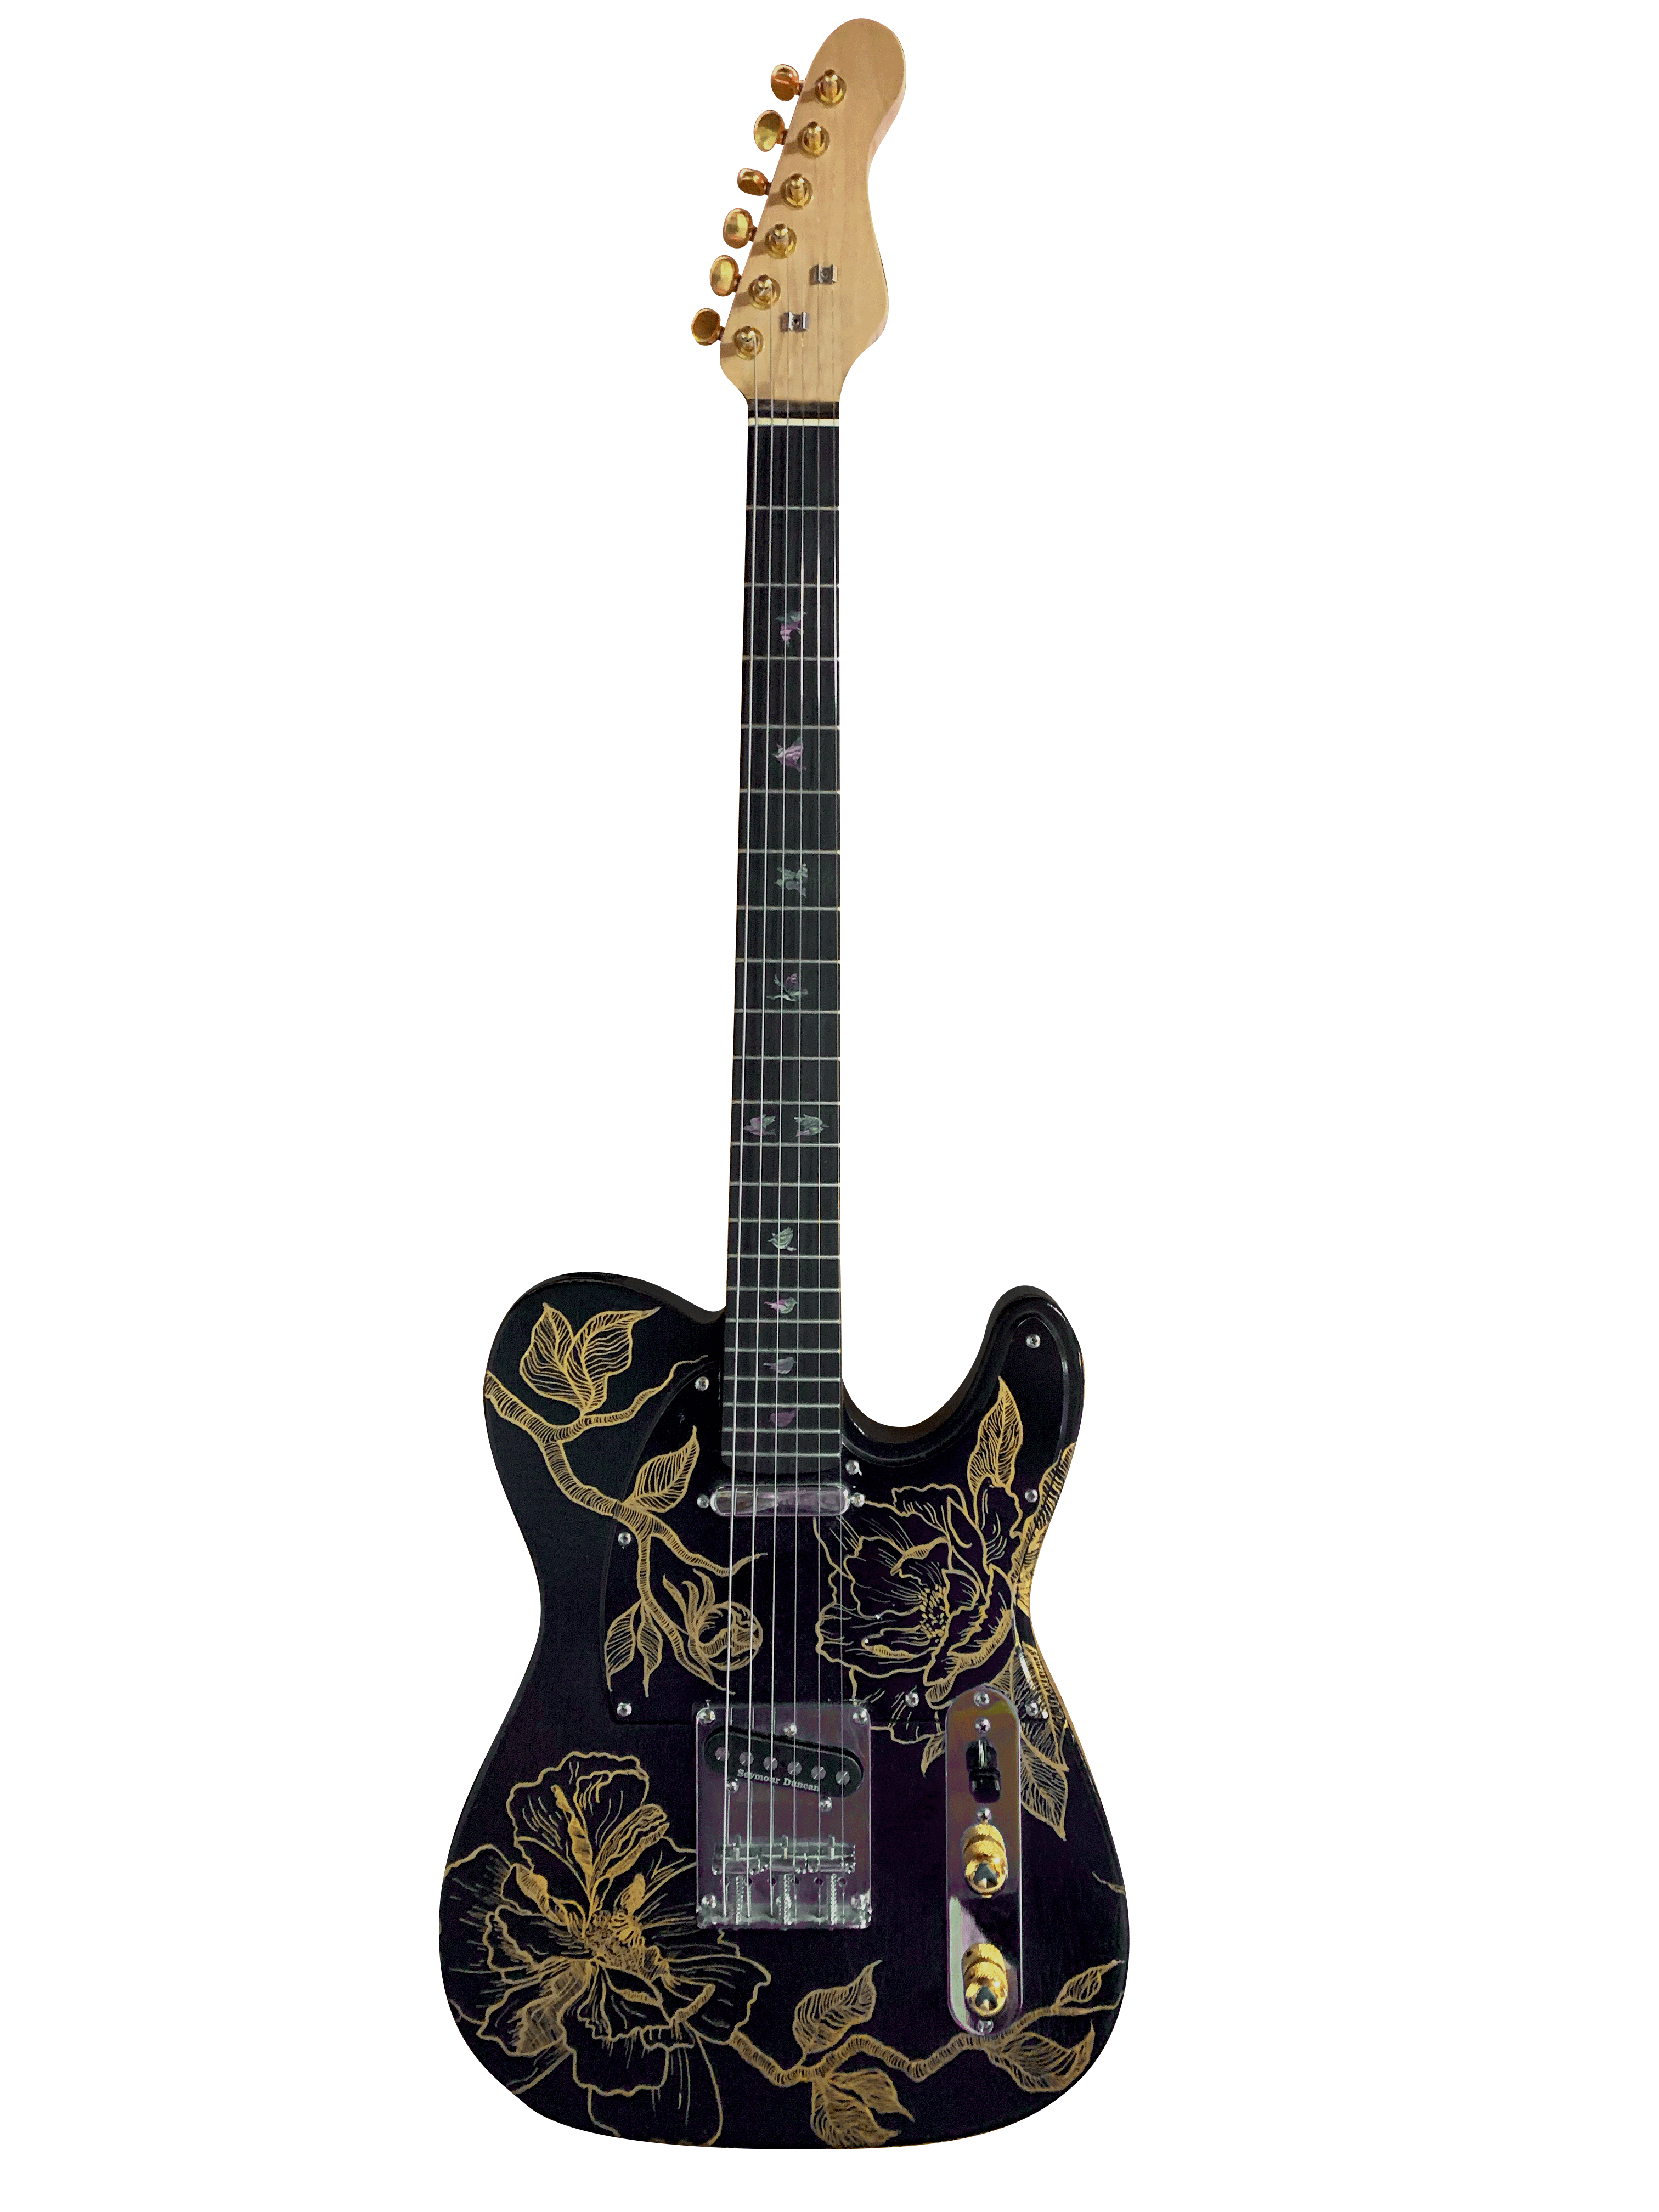 gitarre fender customized black gold flower